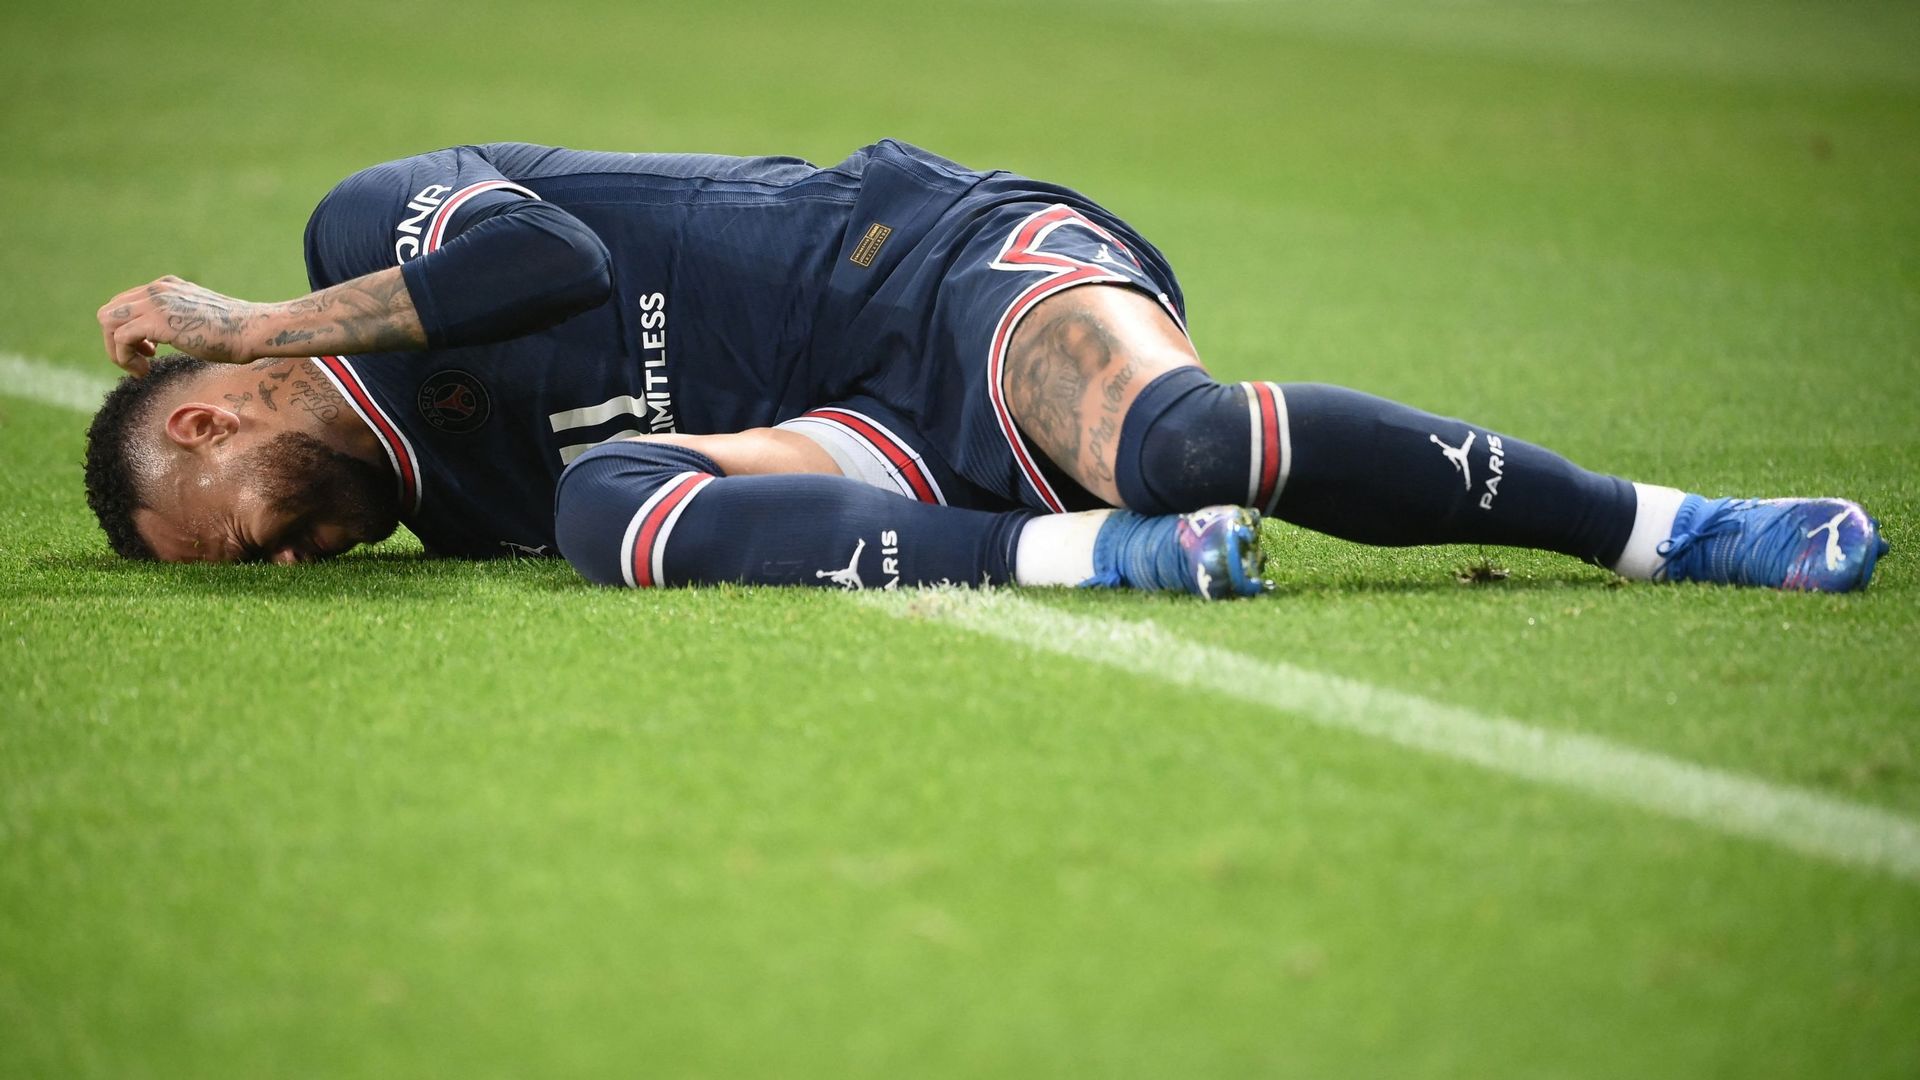 Neymar au sol après un contact. Victime d’une blessure assez sérieuse à la cheville dimanche contre Saint-Étienne, Neymar avait quitté la pelouse sur civière et en larmes. Mais quelques heures plus tard, la star du PSG a été aperçue jouant visiblement au 